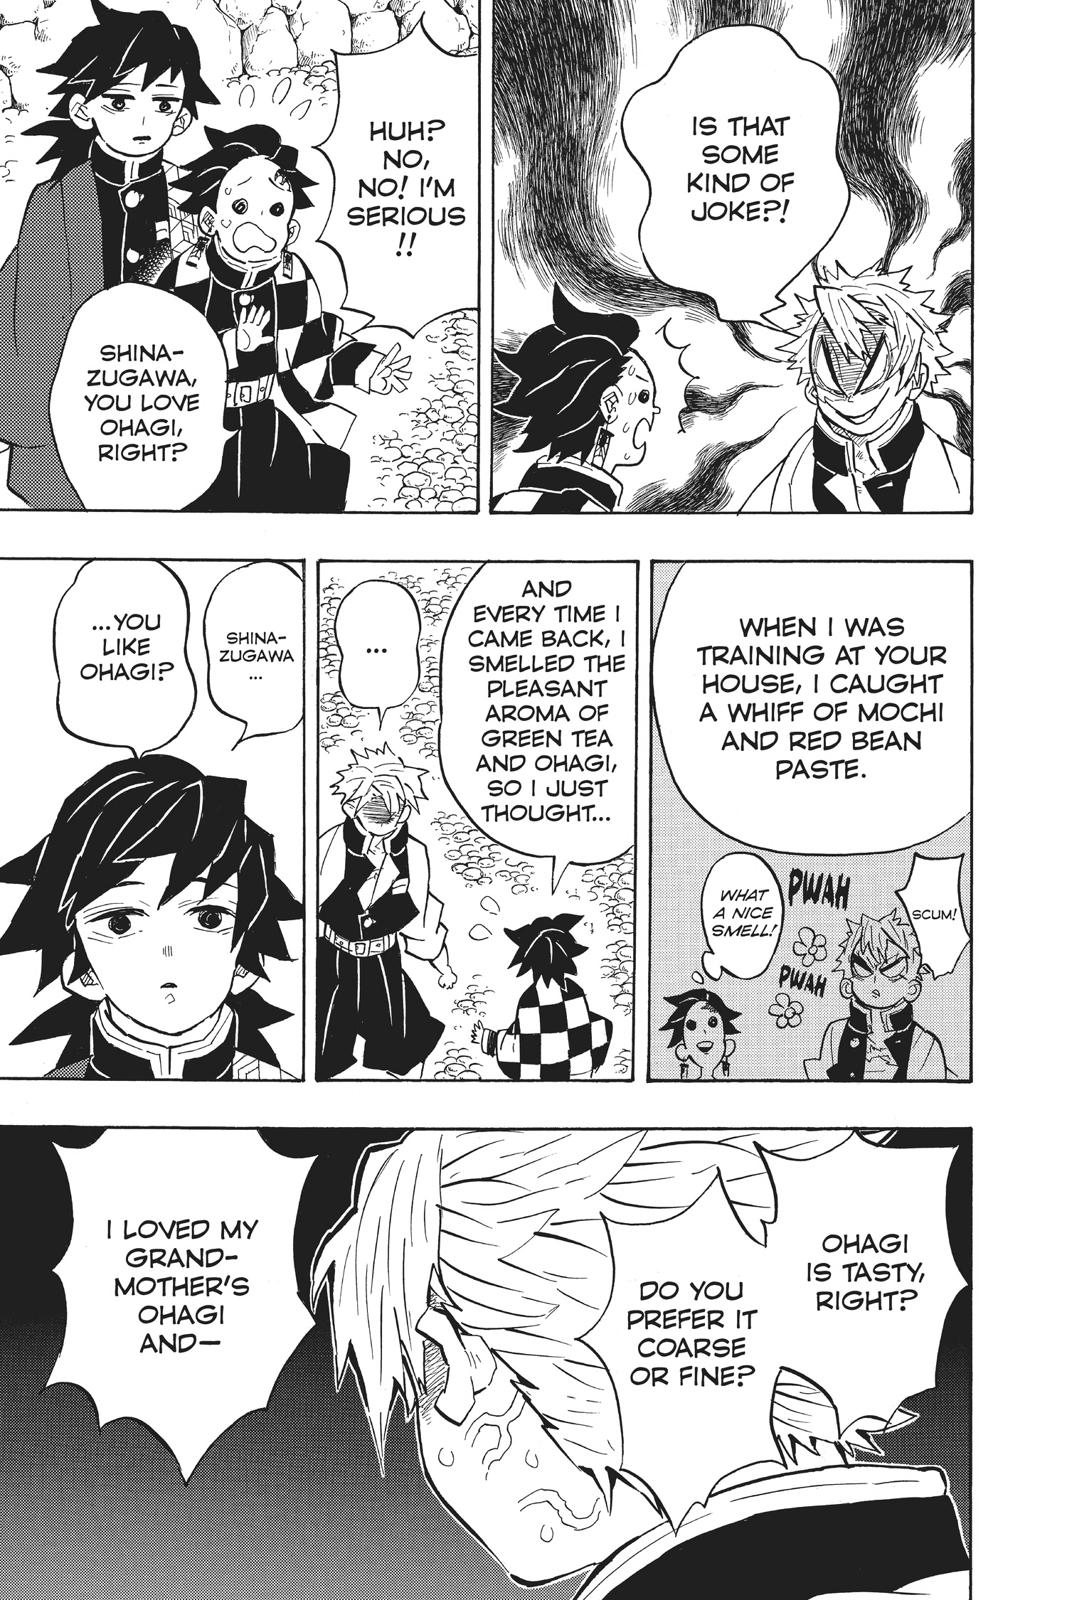 Demon Slayer Manga Manga Chapter - 136 - image 3